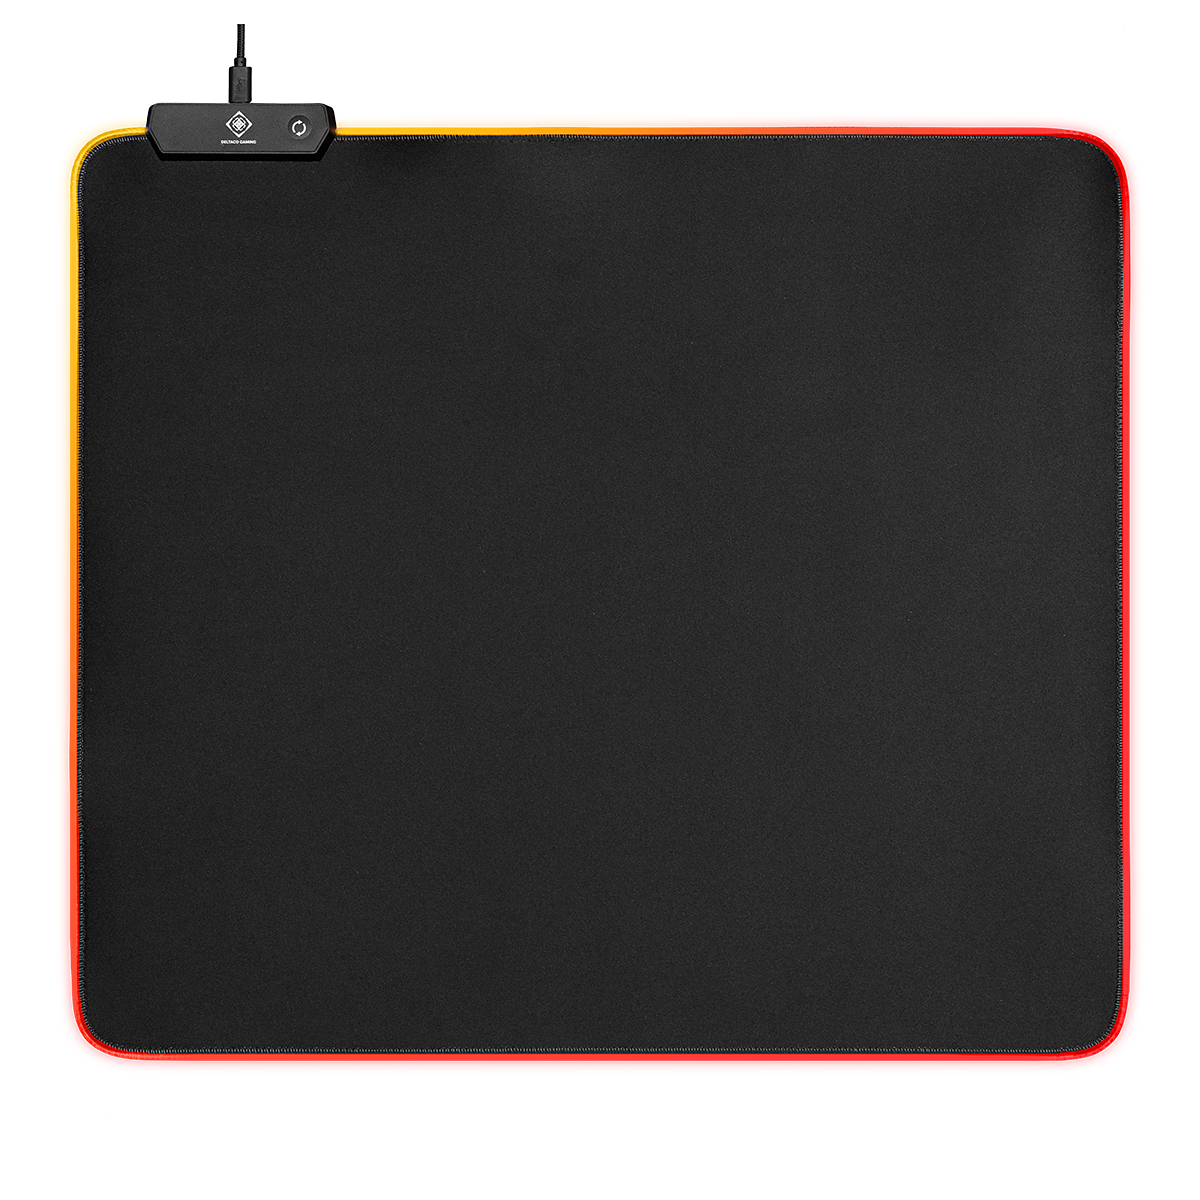 Deltaco GAMING musmatta, 3 RGB lägen, 45x40cm, svart